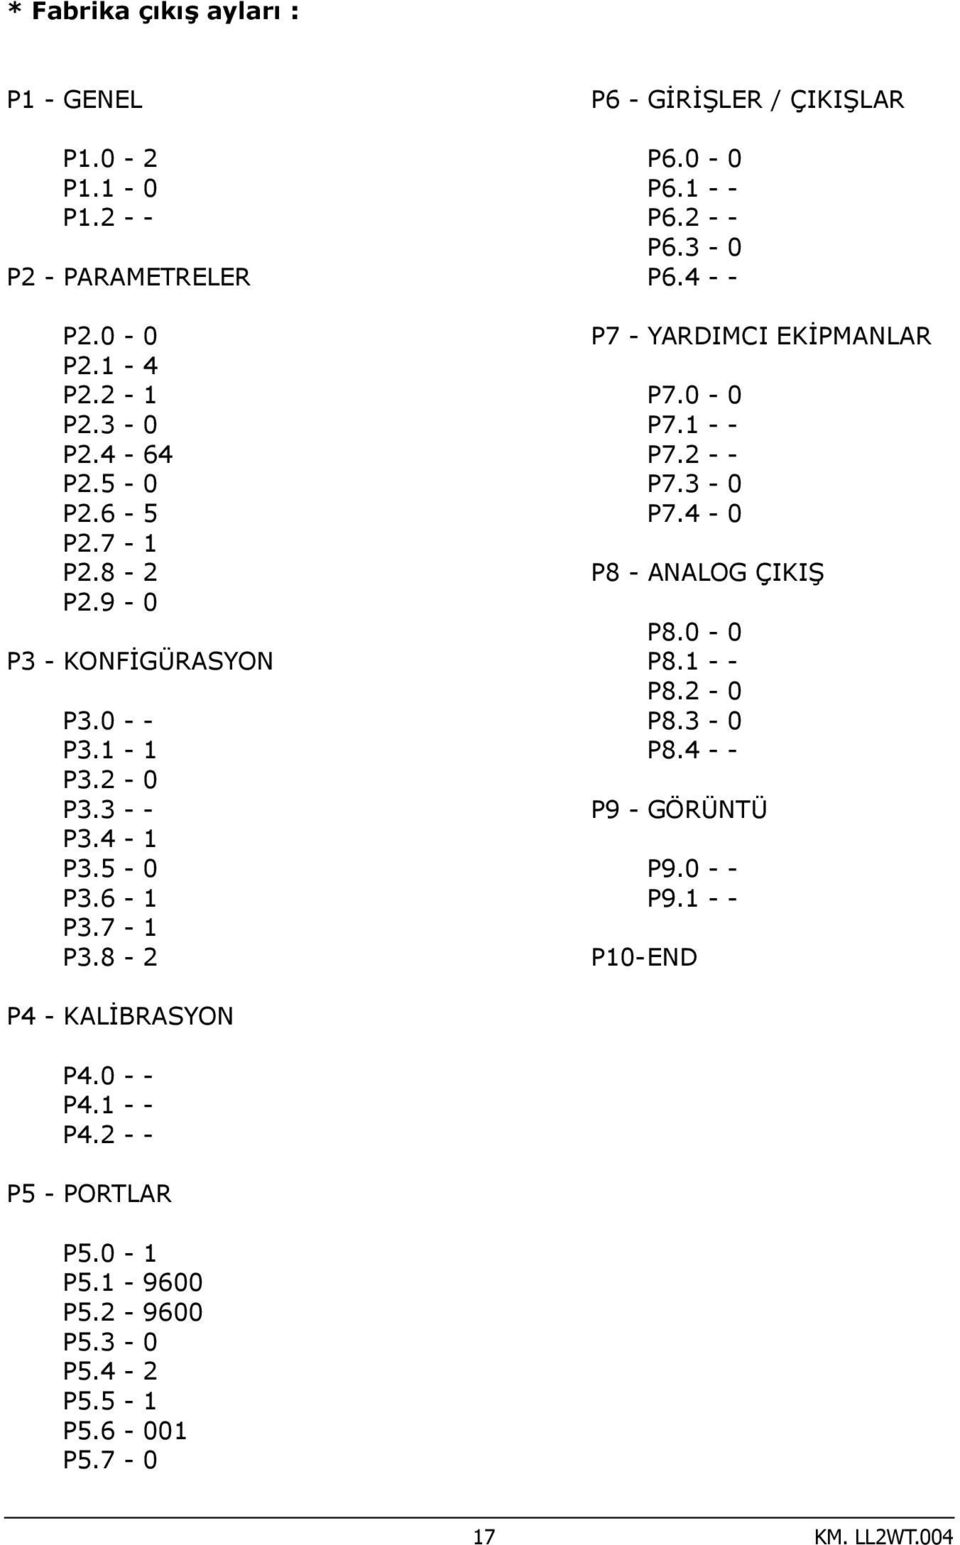 4 - - P7 - YARDIMCI EKİPMANLAR P7.0-0 P7.1 - - P7.2 - - P7.3-0 P7.4-0 P8 - ANALOG ÇIKIŞ P8.0-0 P8.1 - - P8.2-0 P8.3-0 P8.4 - - P9 - GÖRÜNTÜ P9.